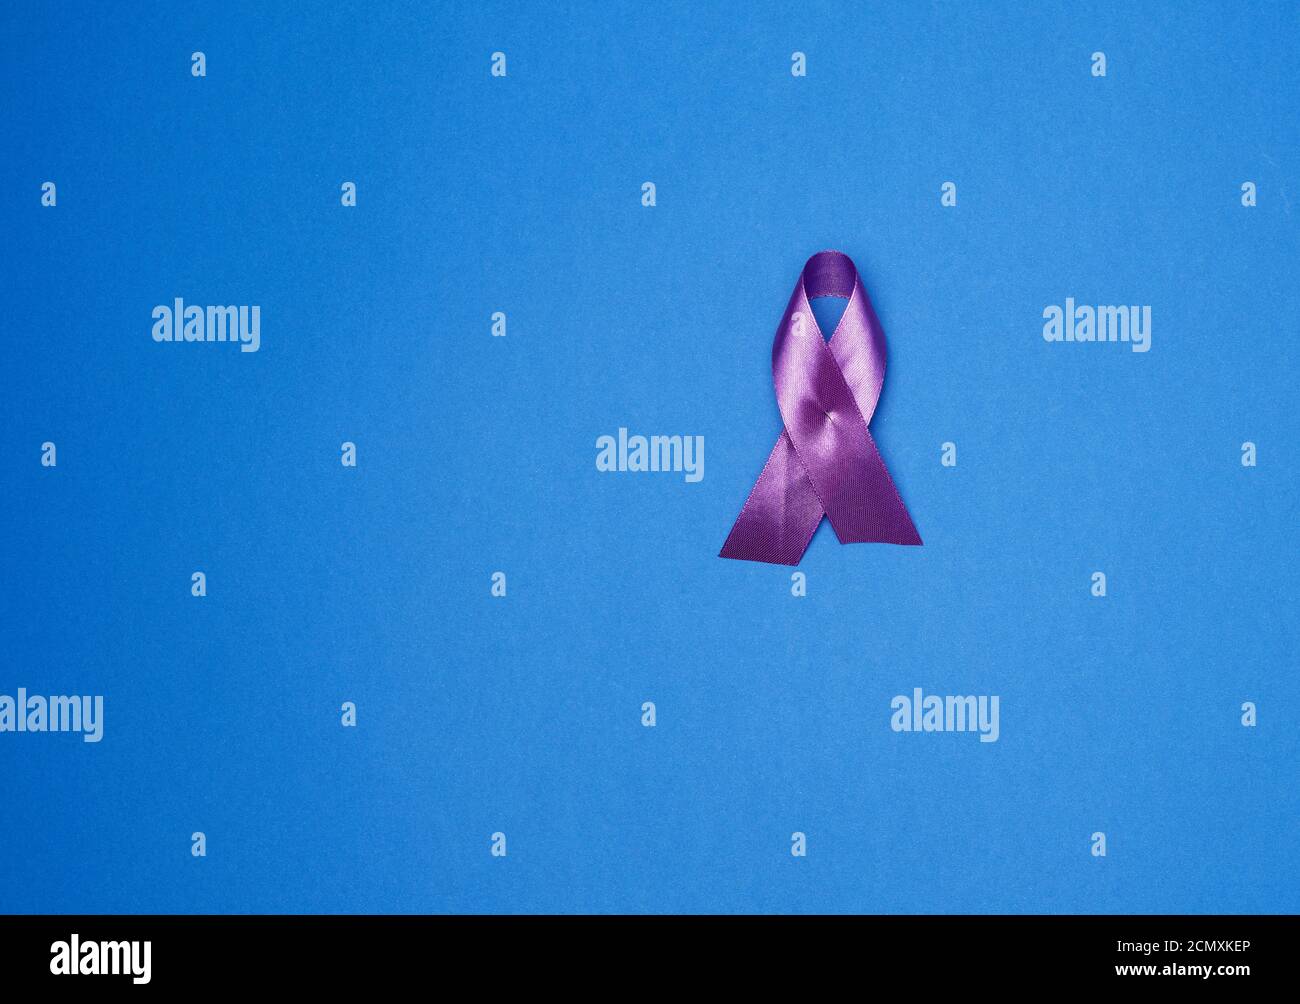 Ruban violet comme symbole de la recherche précoce et de la lutte contre la maladie, la maladie d'Alzheimer Banque D'Images